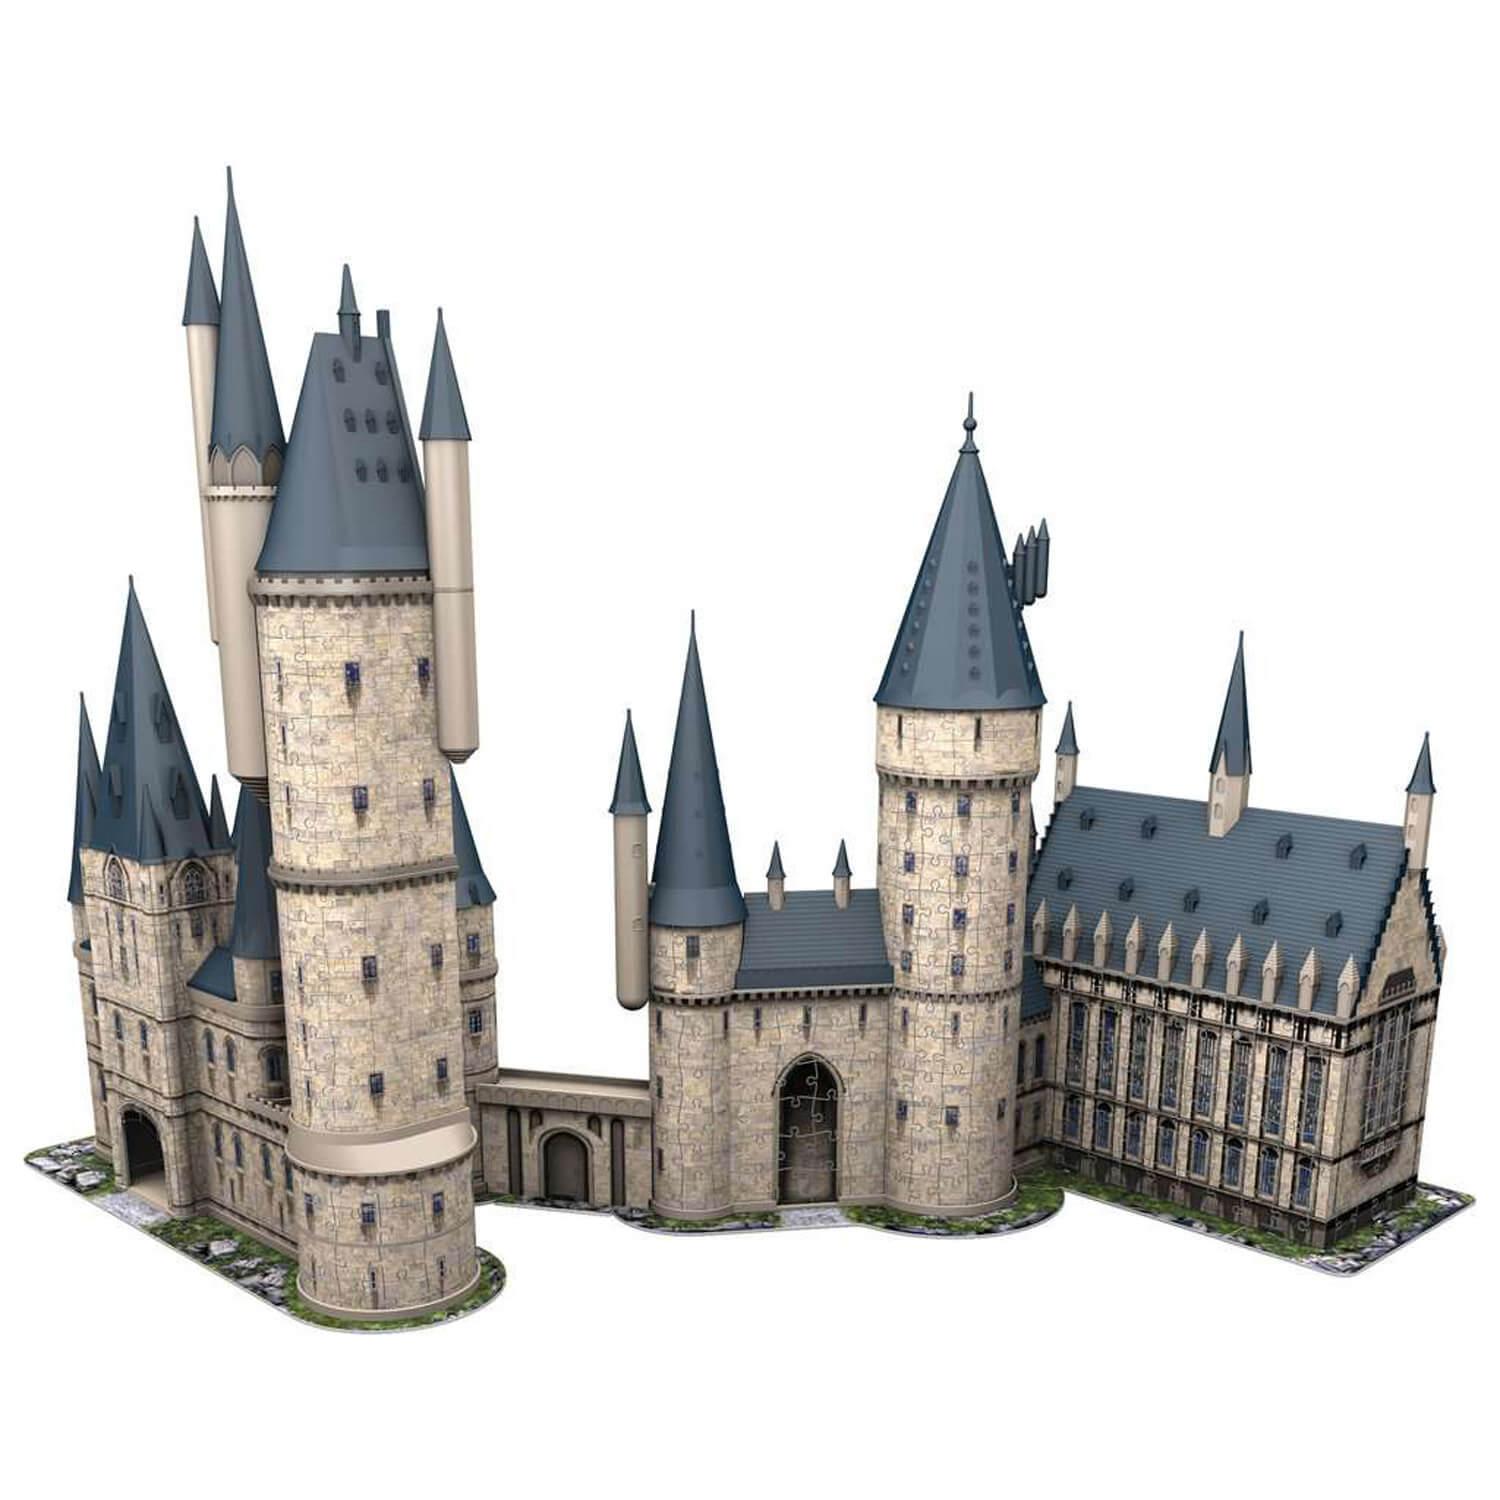 RAVENSBURGER Puzzle 216 pièces 3D Boîte de rangement - Harry Potter pas  cher 